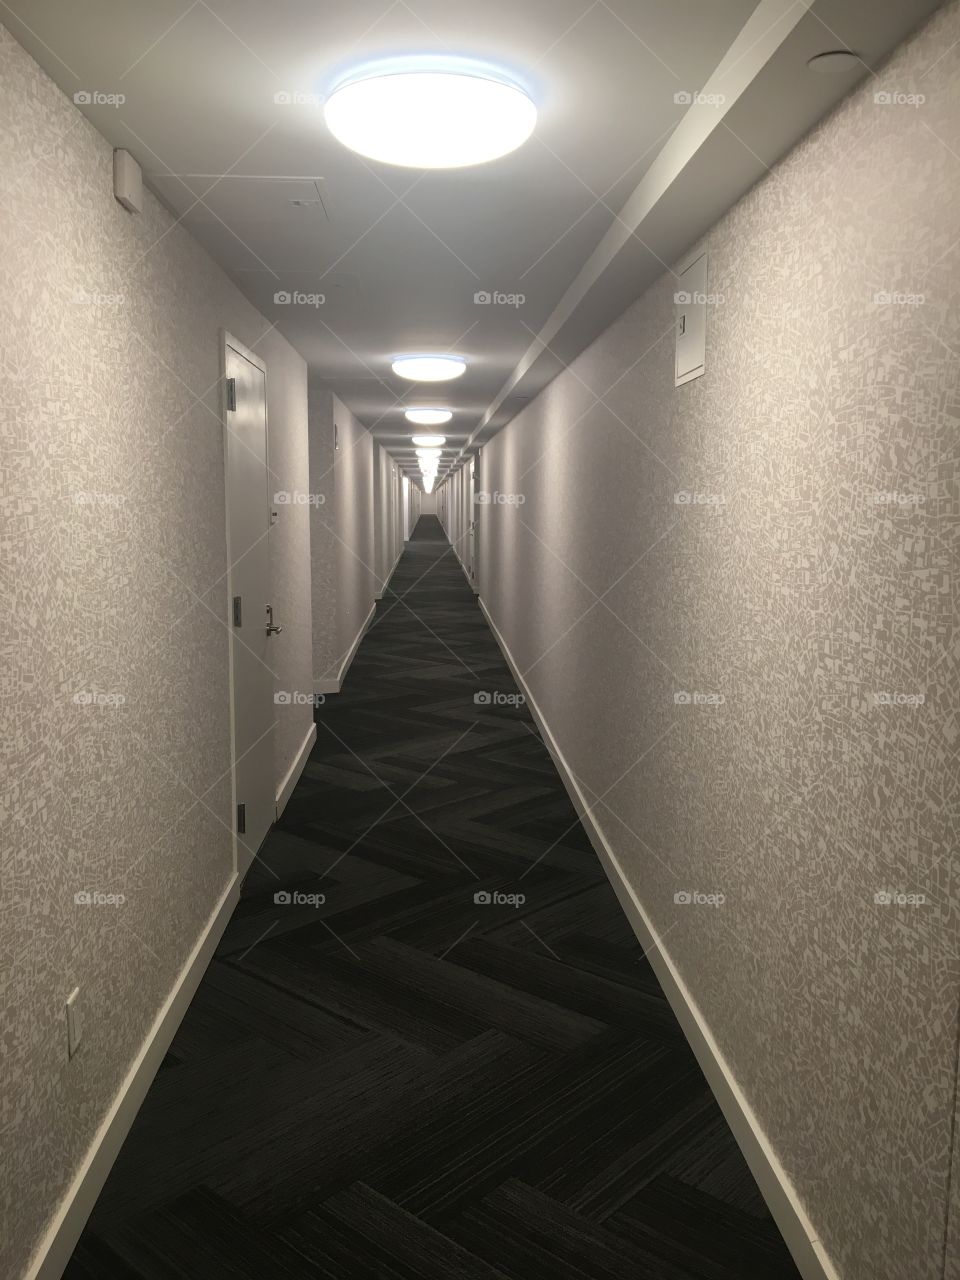 NeverEnding Hallway